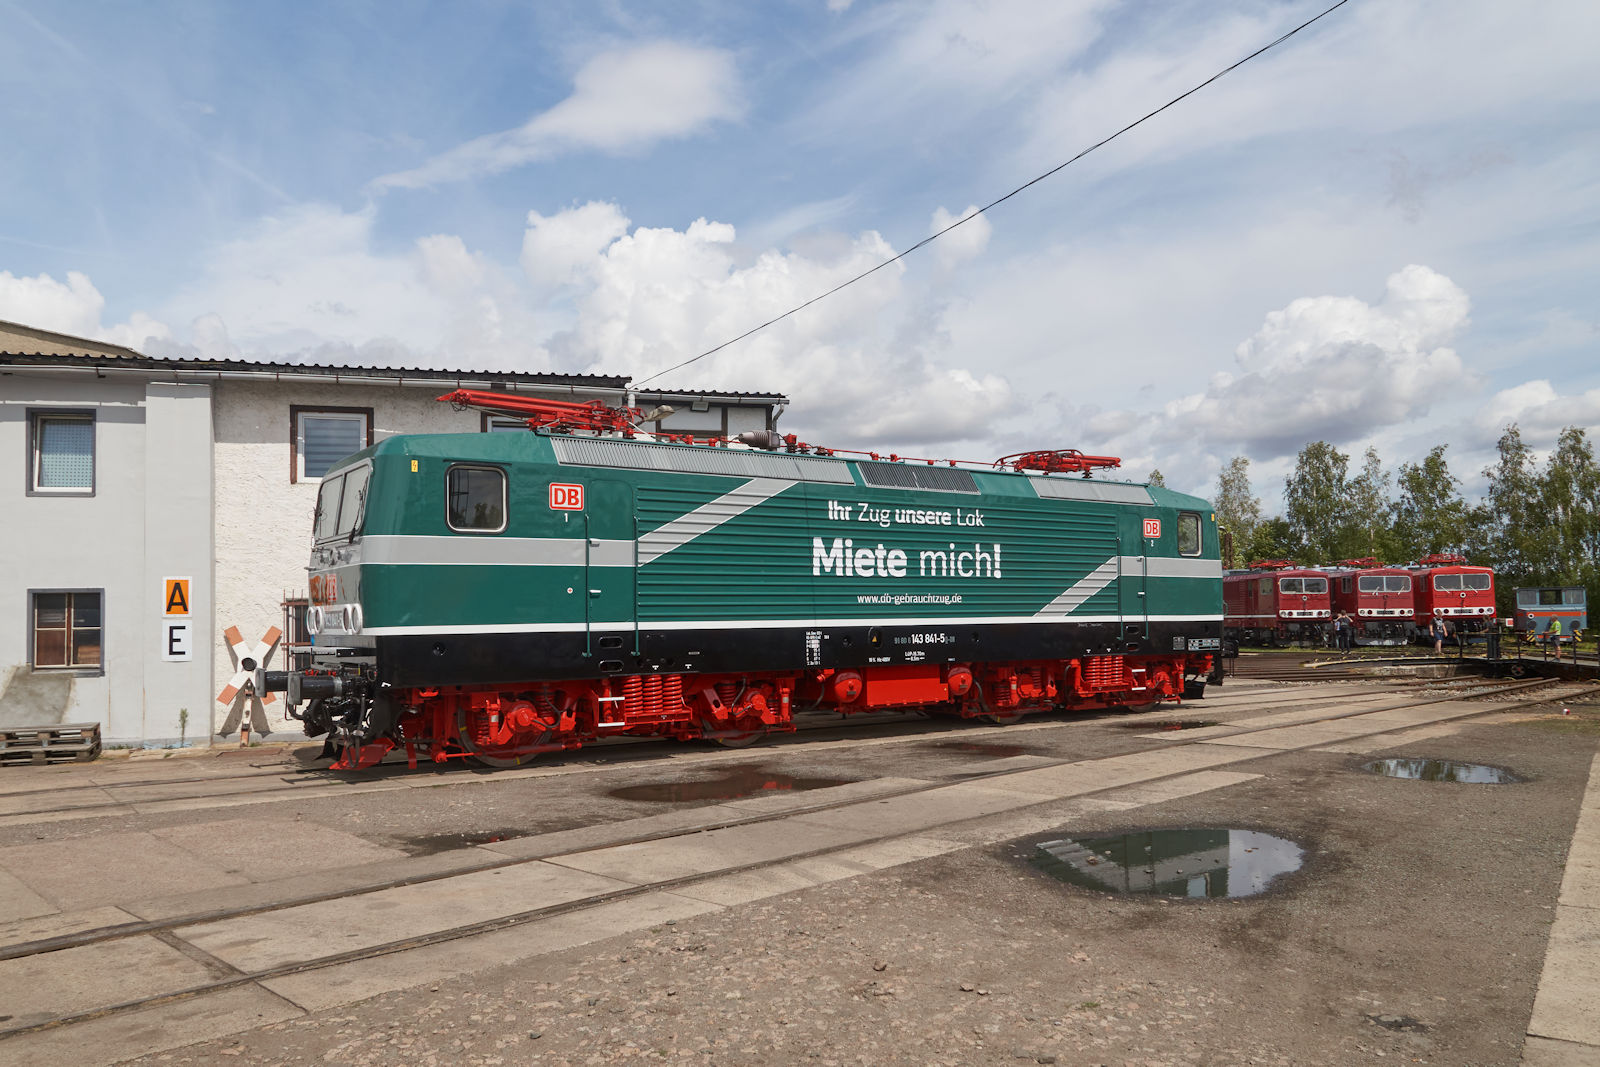 Die Loks der BR 143 von DB Gebrauchtzug fallen durch besondere Lackierungen auf. 143 841 trägt seit Sommer 2023 eine Lackierung in Grün. Beim Sommerfest des Thüringer Eisenbahn Vereins wurde sie präsentiert.